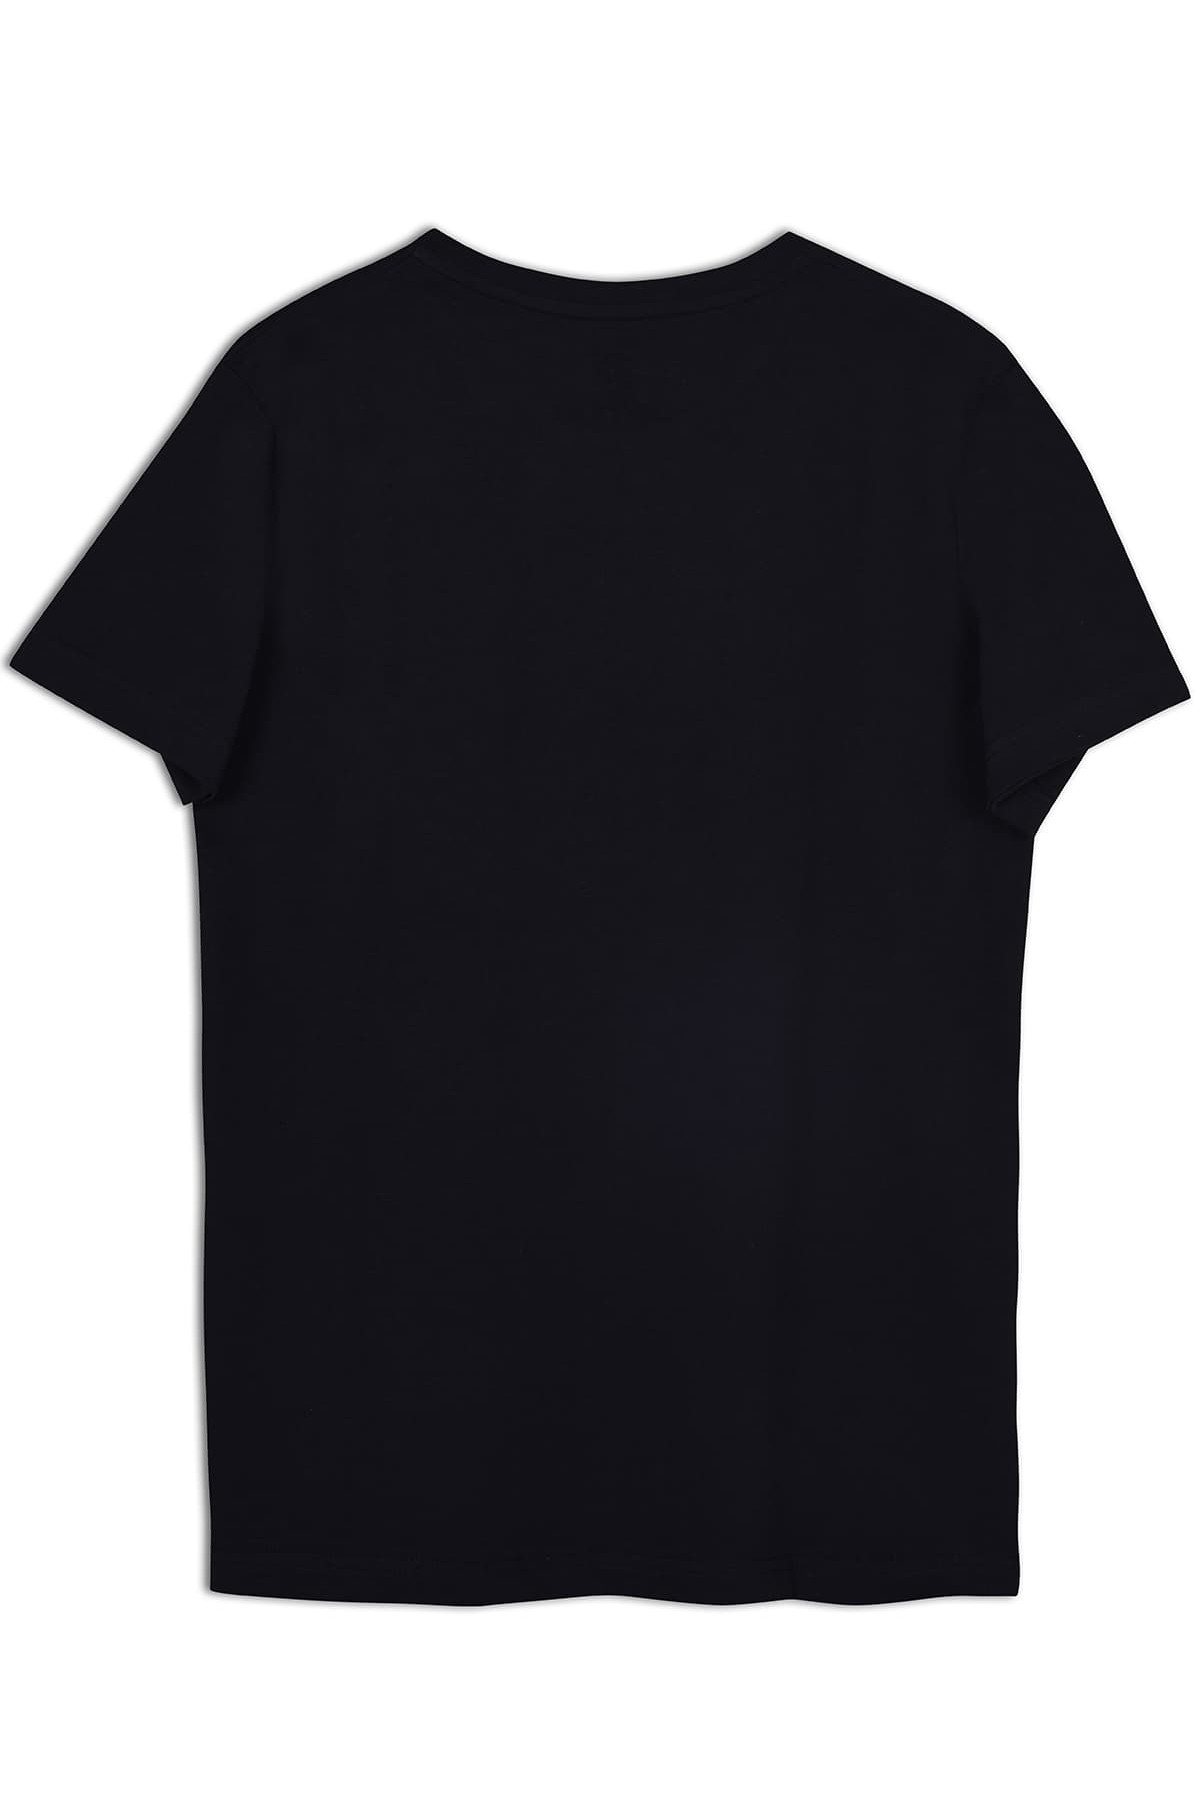 Yahu Tasarım Bisiklet Yaka Siyah Pamuk T-shirt 22